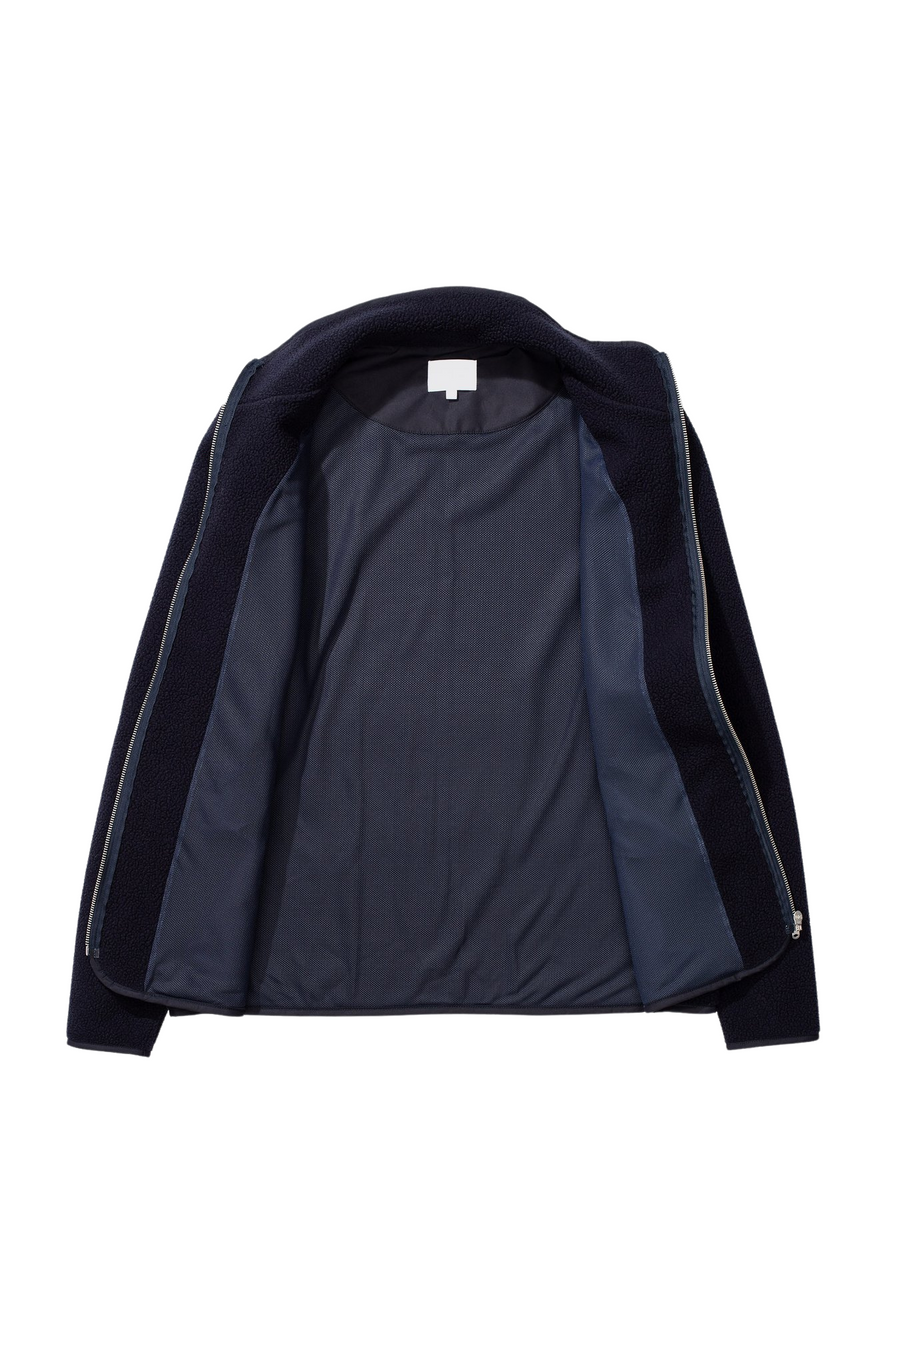 Frederik Tab Series Fleece Jacket Dark Navy